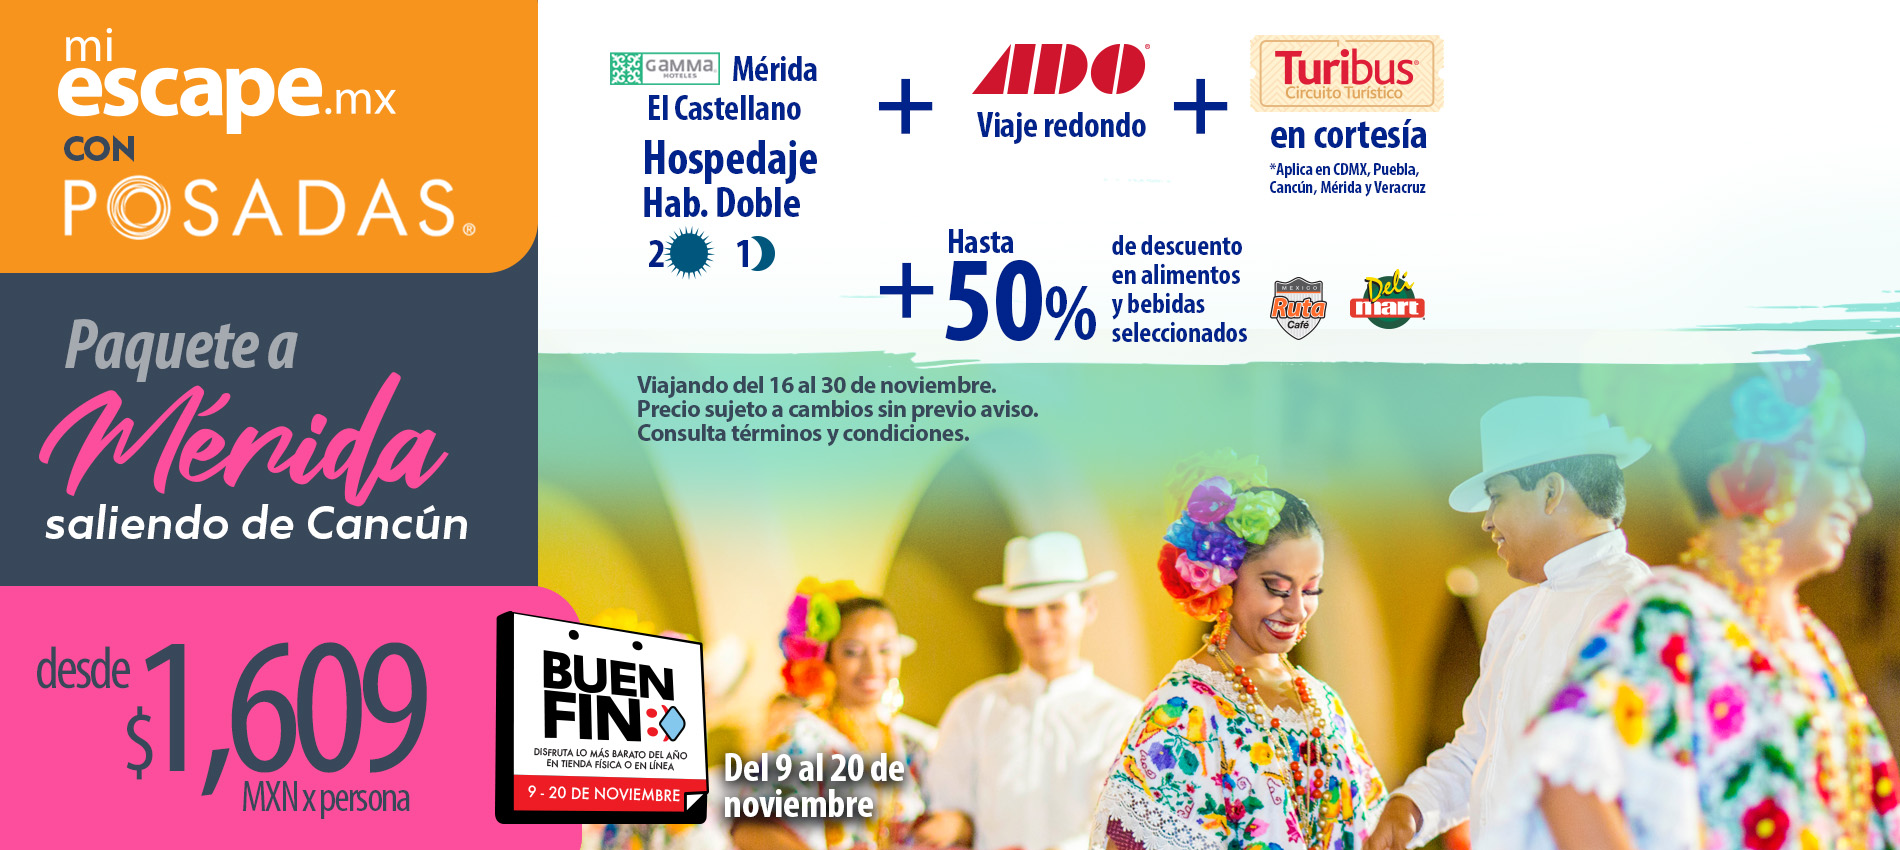 Paquete redondo (Hotel + Autobús) Cancún a Mérida | Mi Escape con Posadas